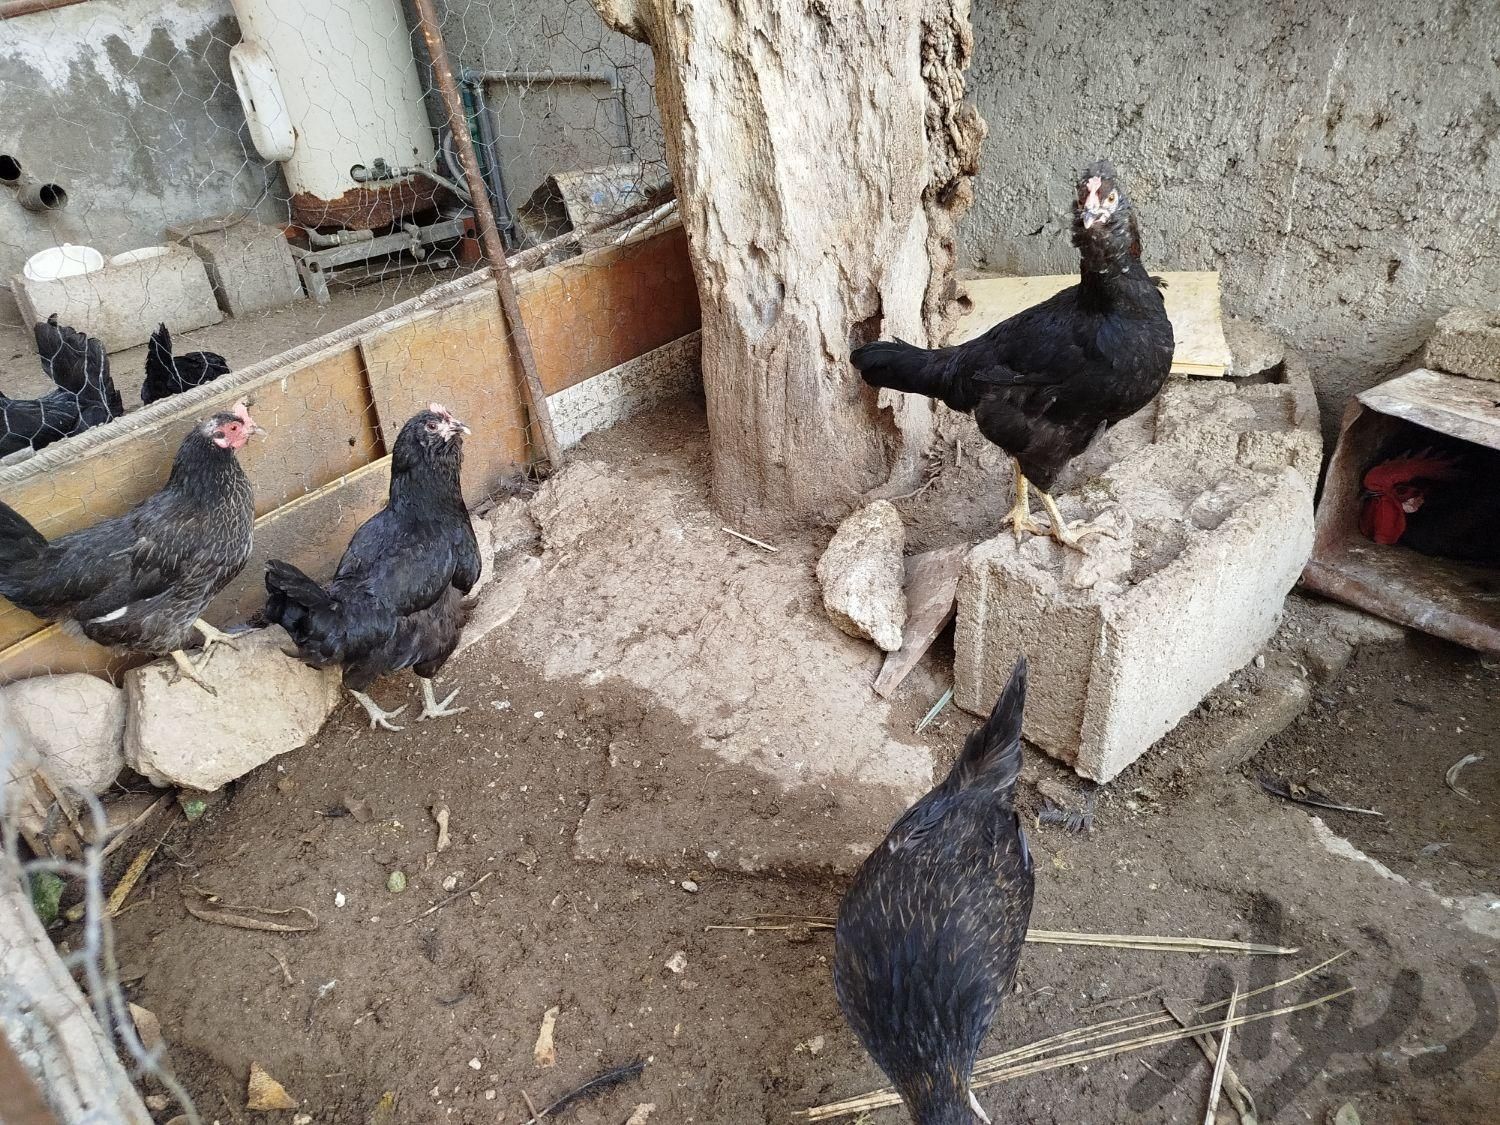 مرغ محلی تخم گذار خورموج|حیوانات مزرعه|خورموج, |دیوار